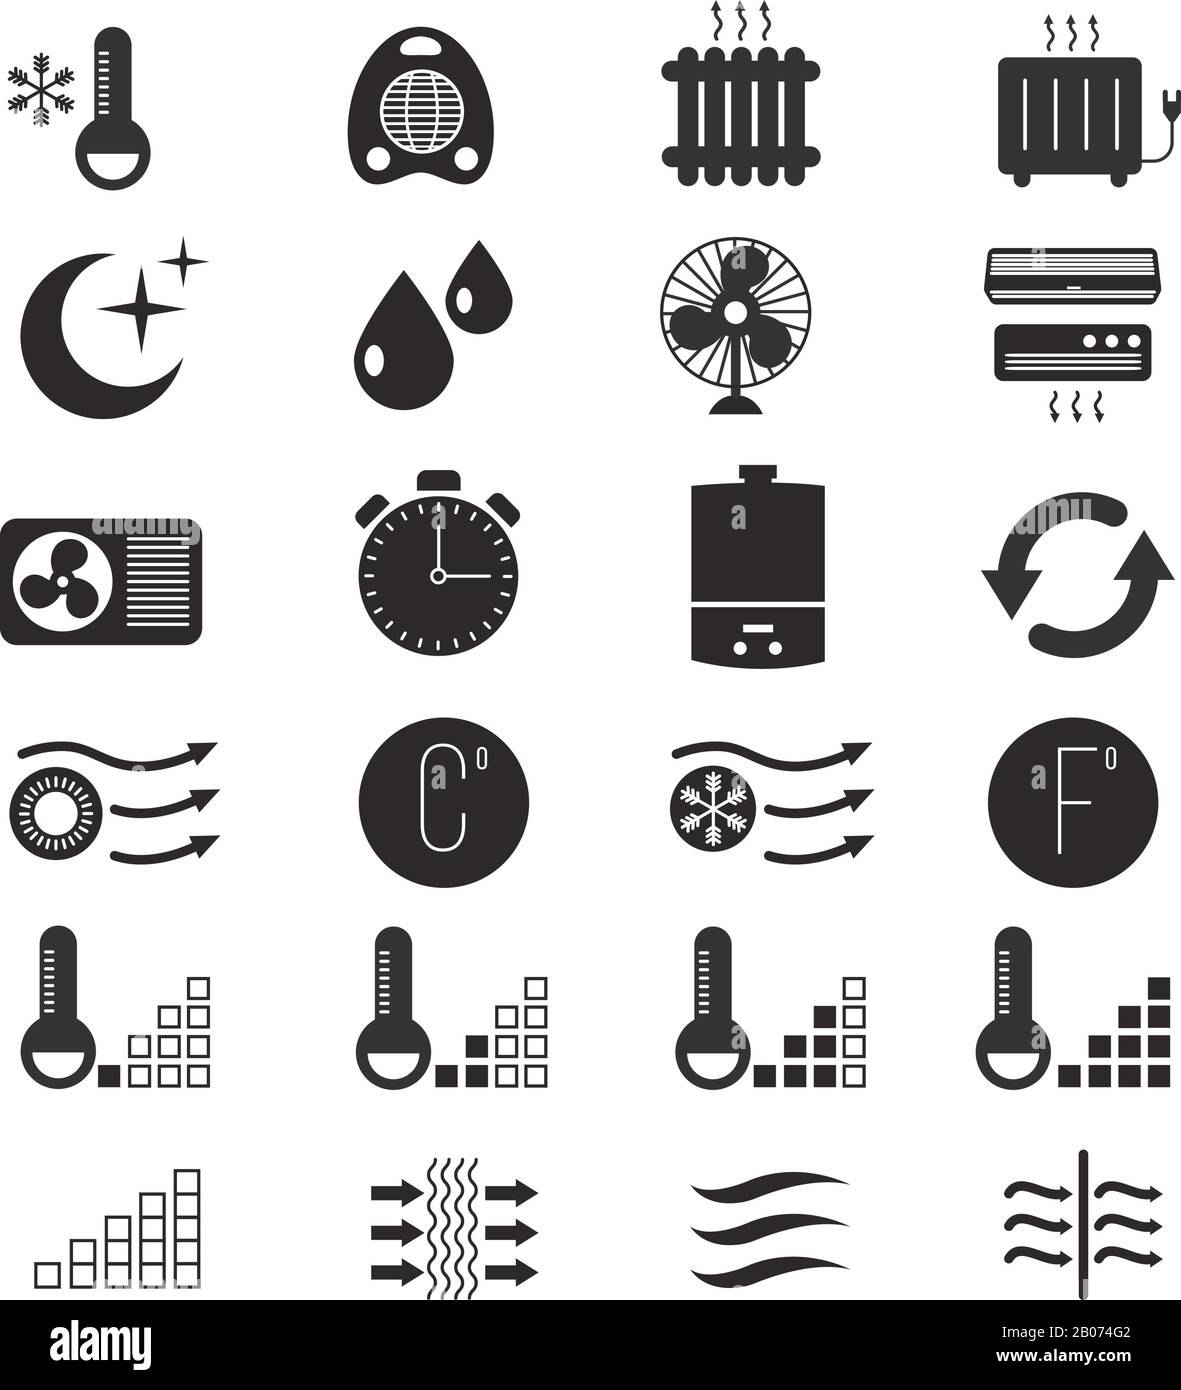 Symbole für Heizung und Kühlung, Klimaanlage Conditioner Equipment und  Klimaregelung Home Illustration Stock-Vektorgrafik - Alamy